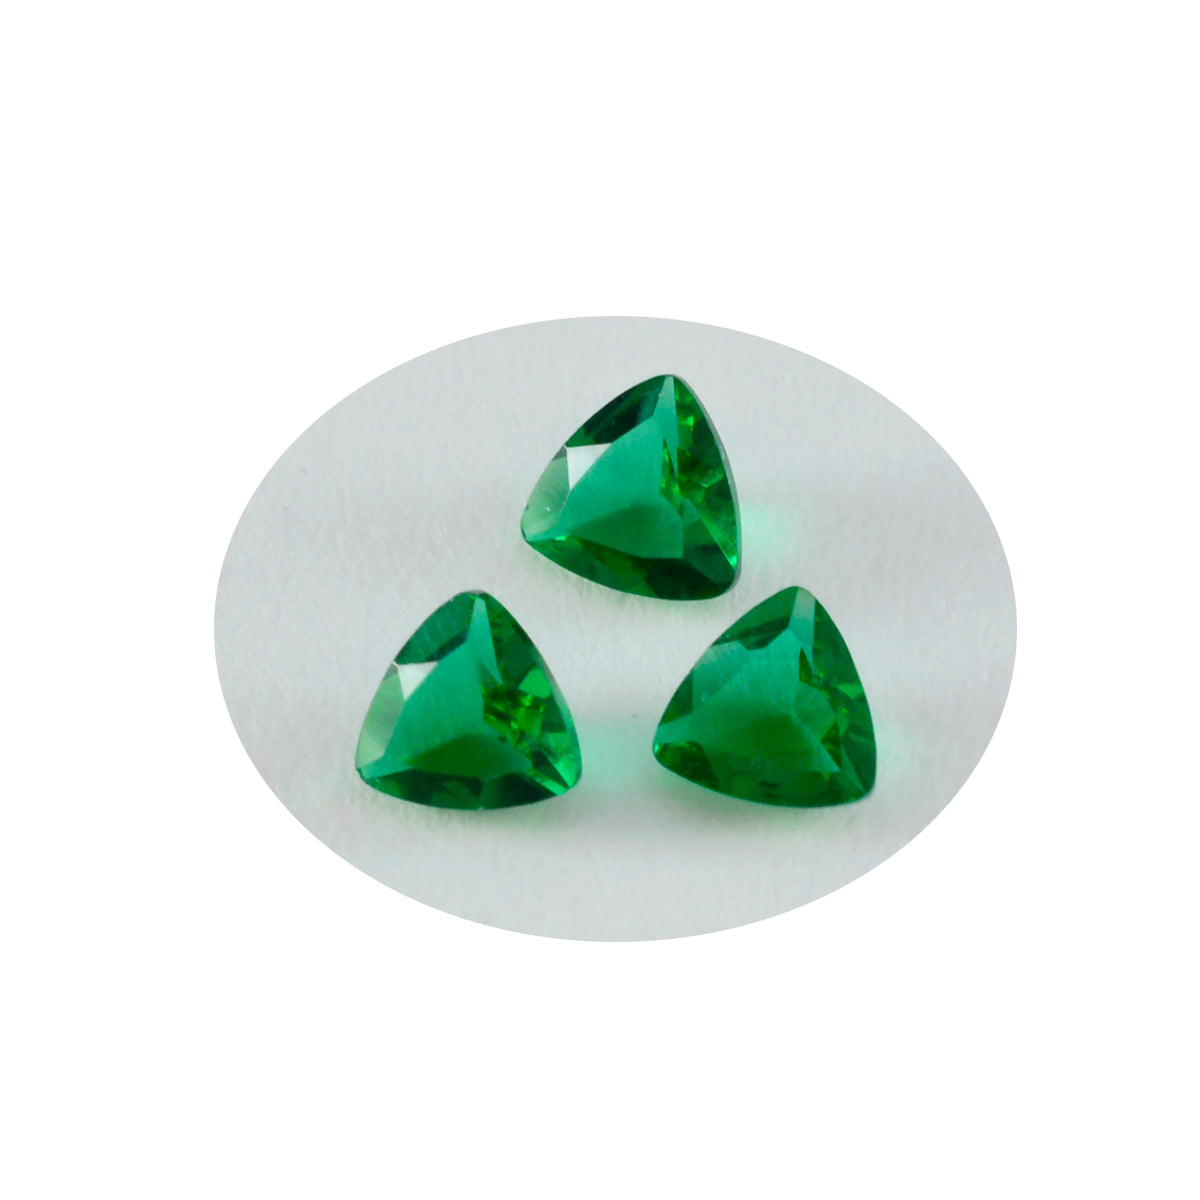 riyogems 1шт зеленый изумруд граненый 10x10 мм форма триллион качественный свободный драгоценный камень